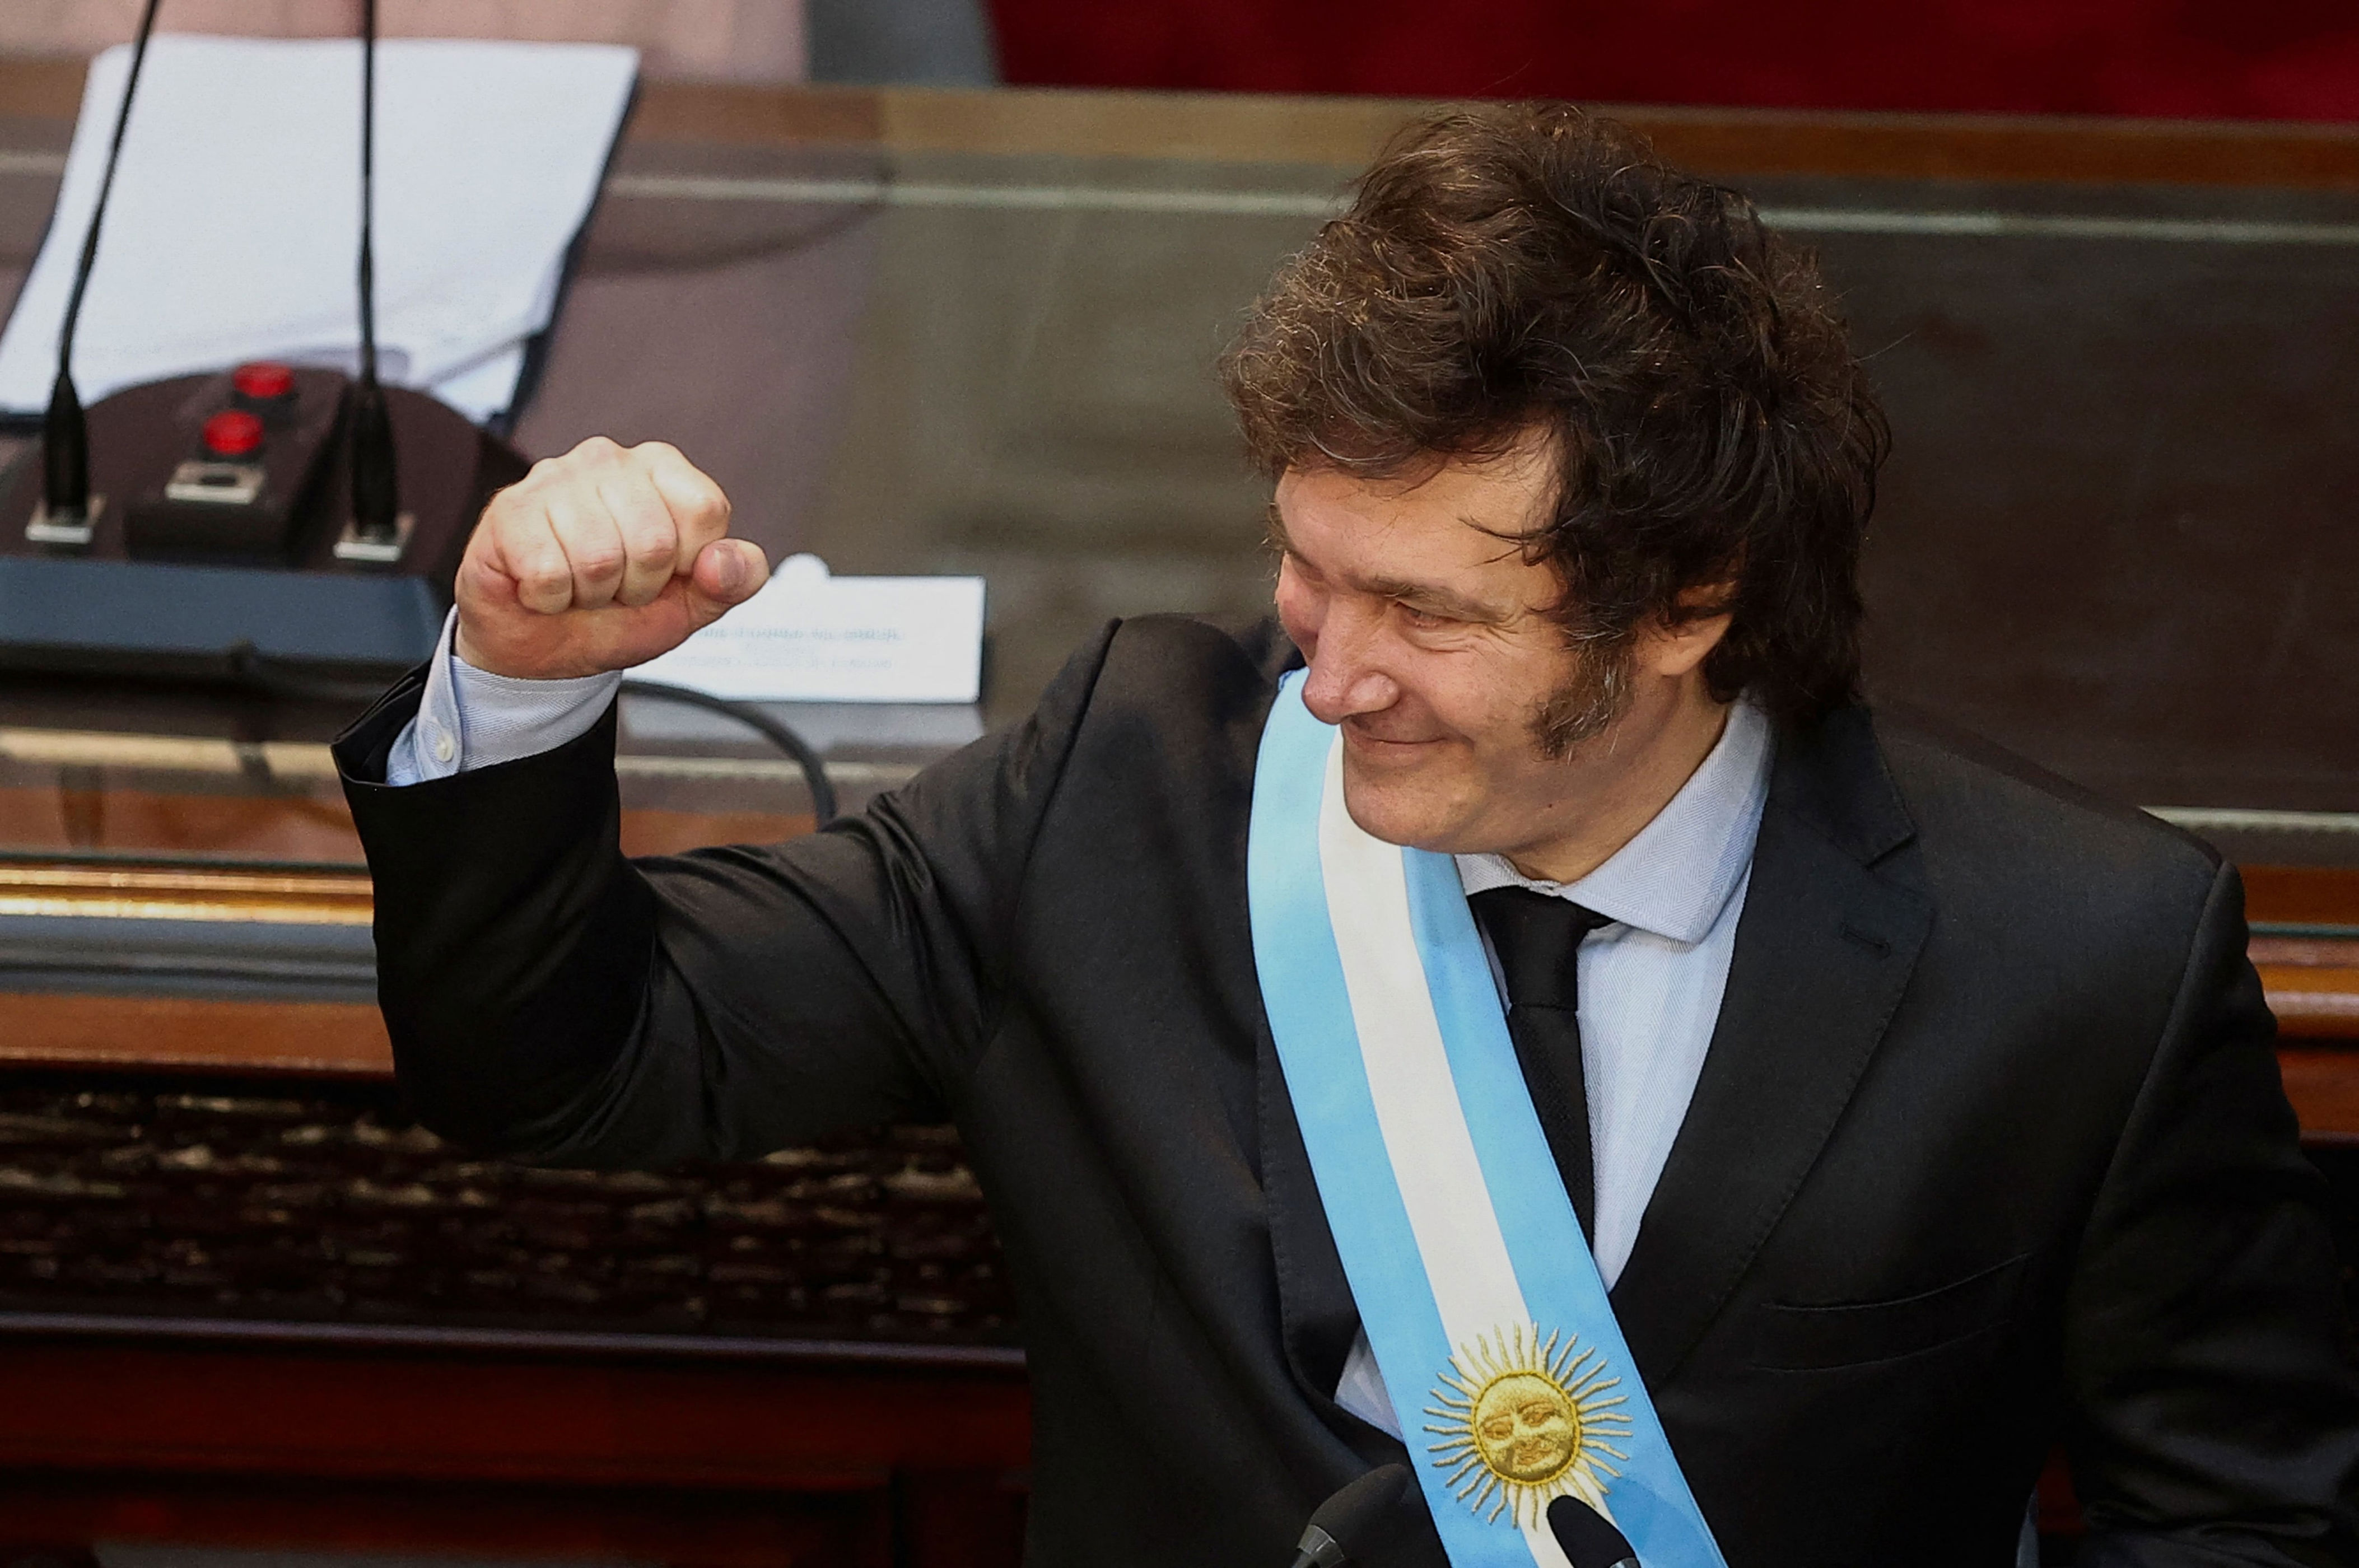 milei, en duro discurso al abrir sesiones del congreso argentino: “los últimos 20 años han sido un desastre económico, una orgía de gasto público”